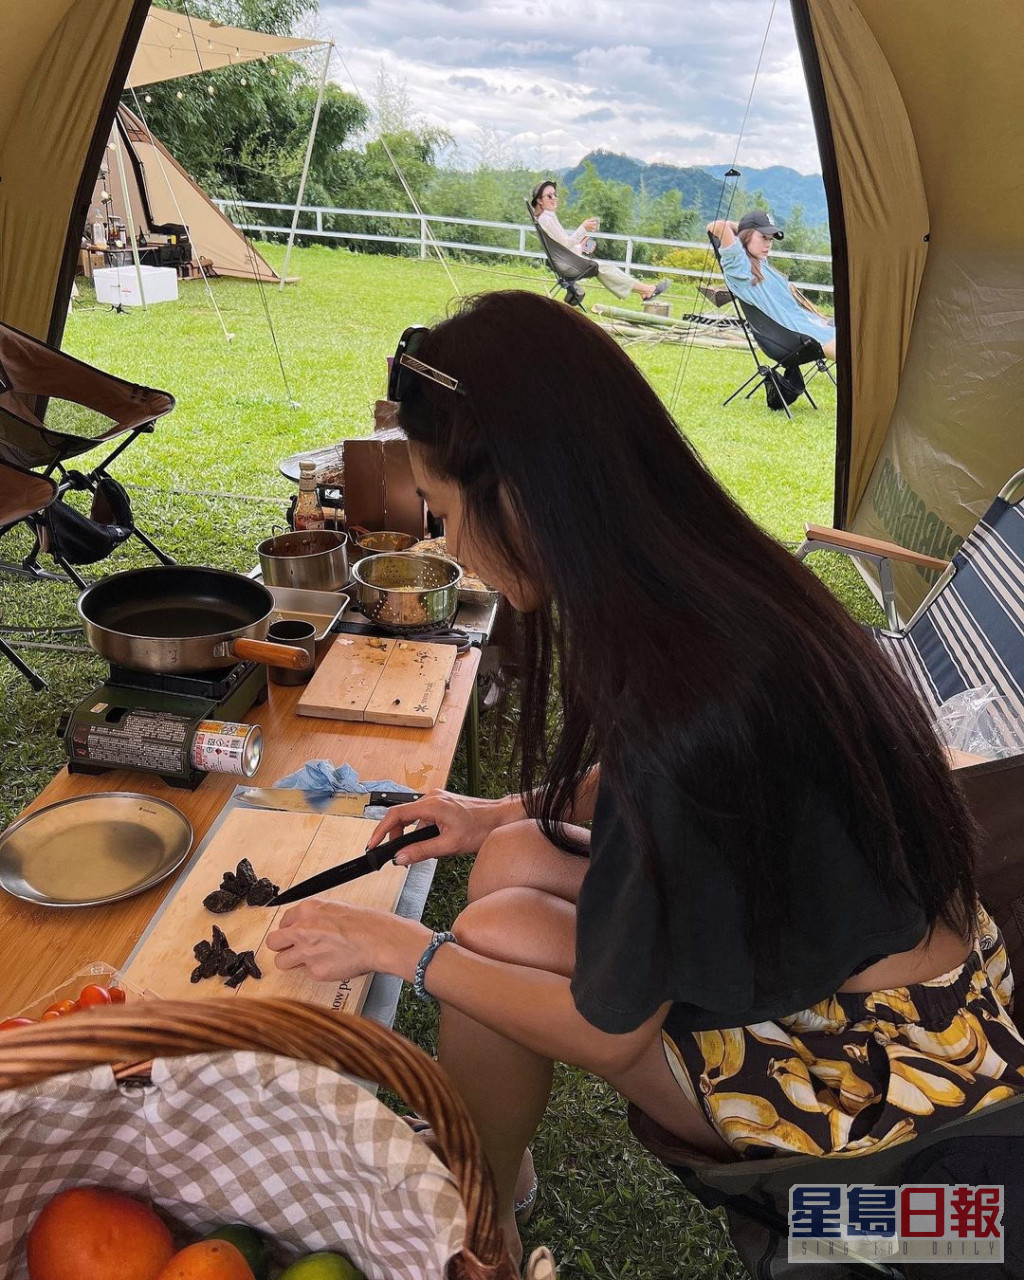 闲时仲去露营。